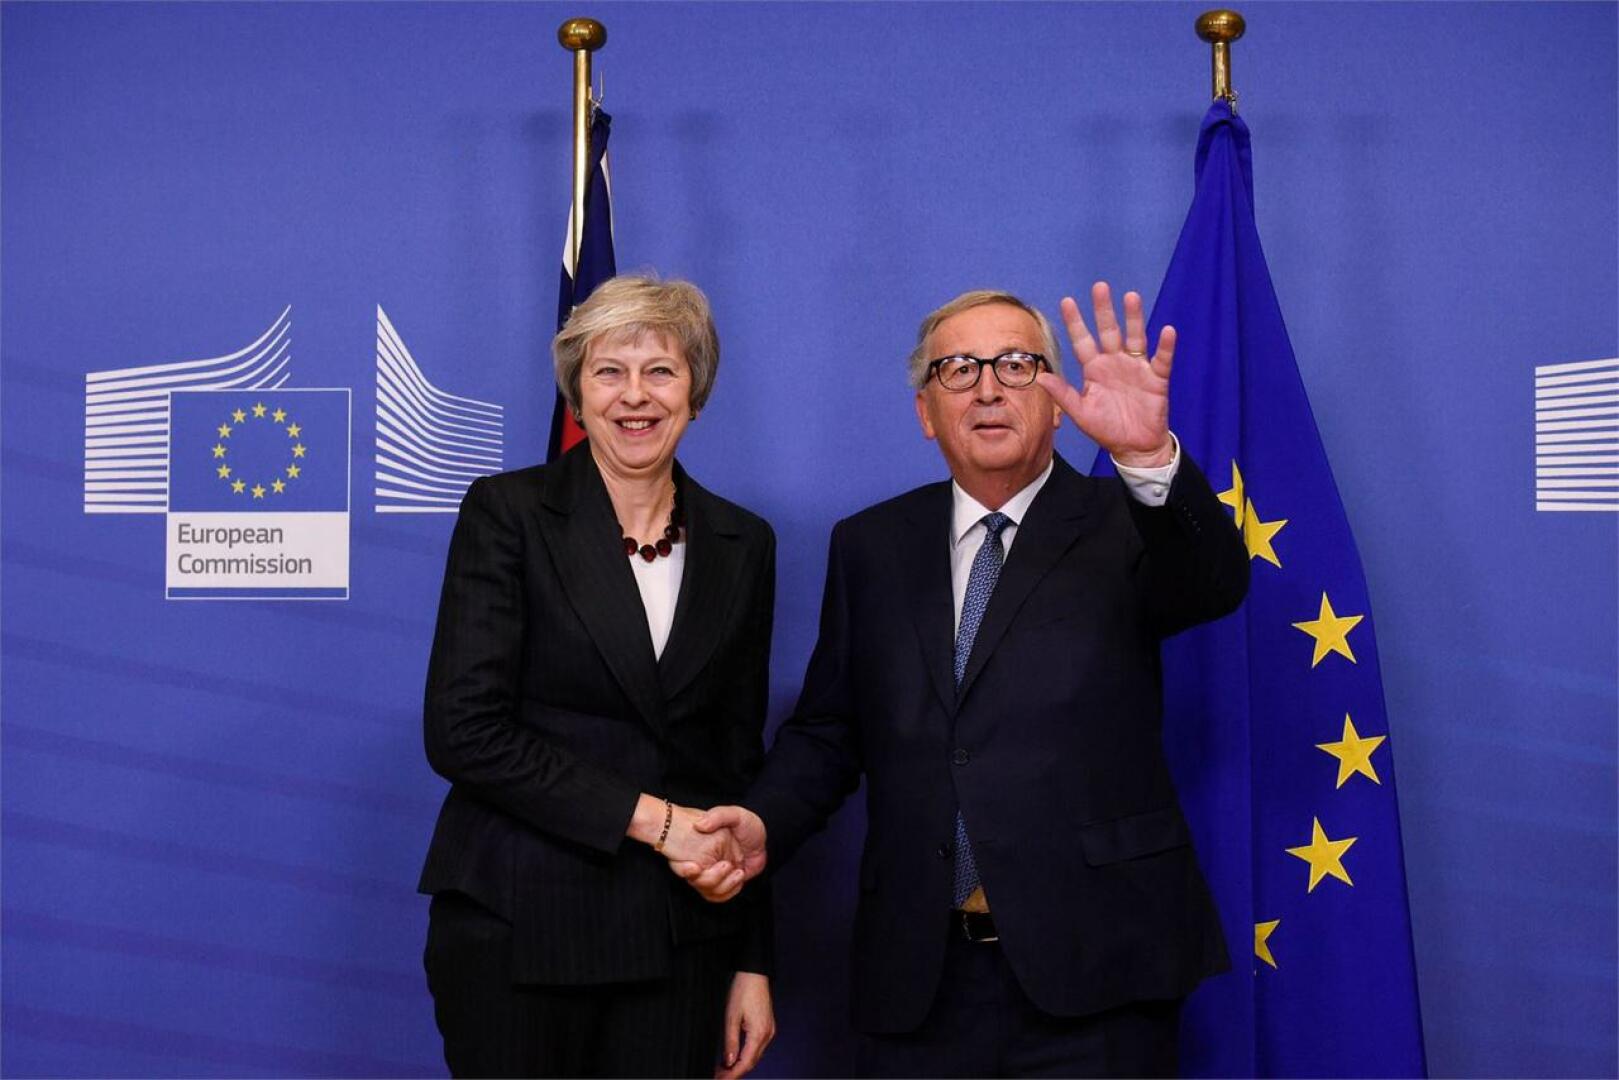 May ja Juncker pohjustavat sunnuntain huippukokousta, jossa EU-johtajien on tarkoitus hyväksyä Britannian erosopimus ja julistus tulevasta suhteesta. LEHTIKUVA/AFP